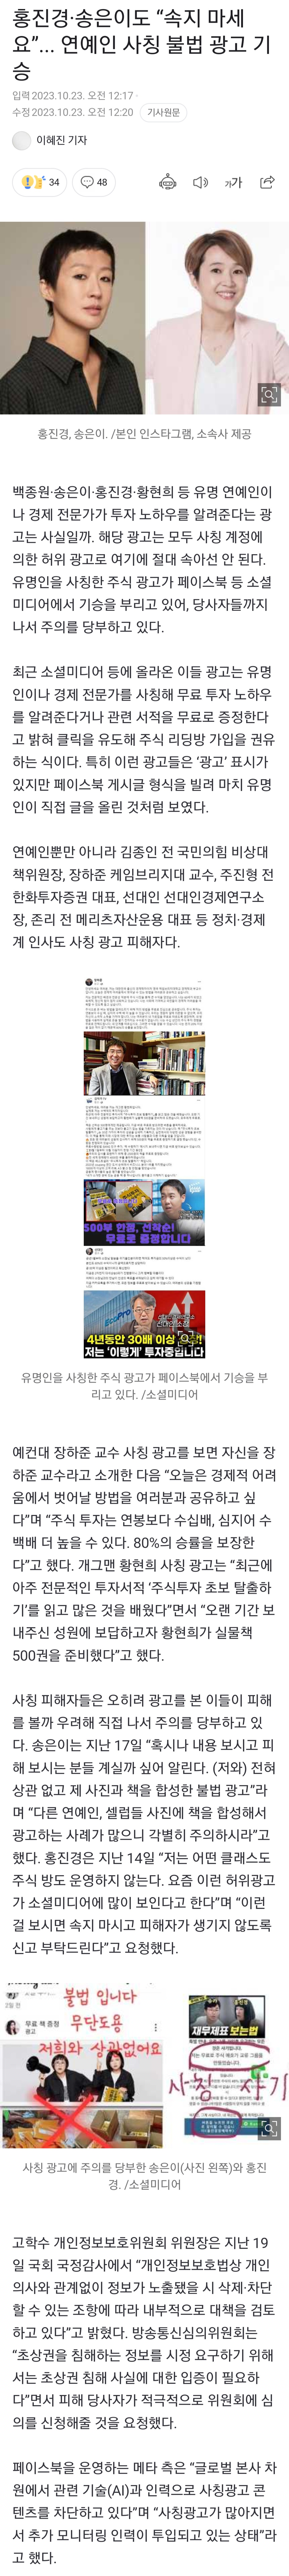 [정보/소식] 홍진경·송은이도 "속지 마세요”... 연예인 사칭 불법 광고 기승 | 인스티즈